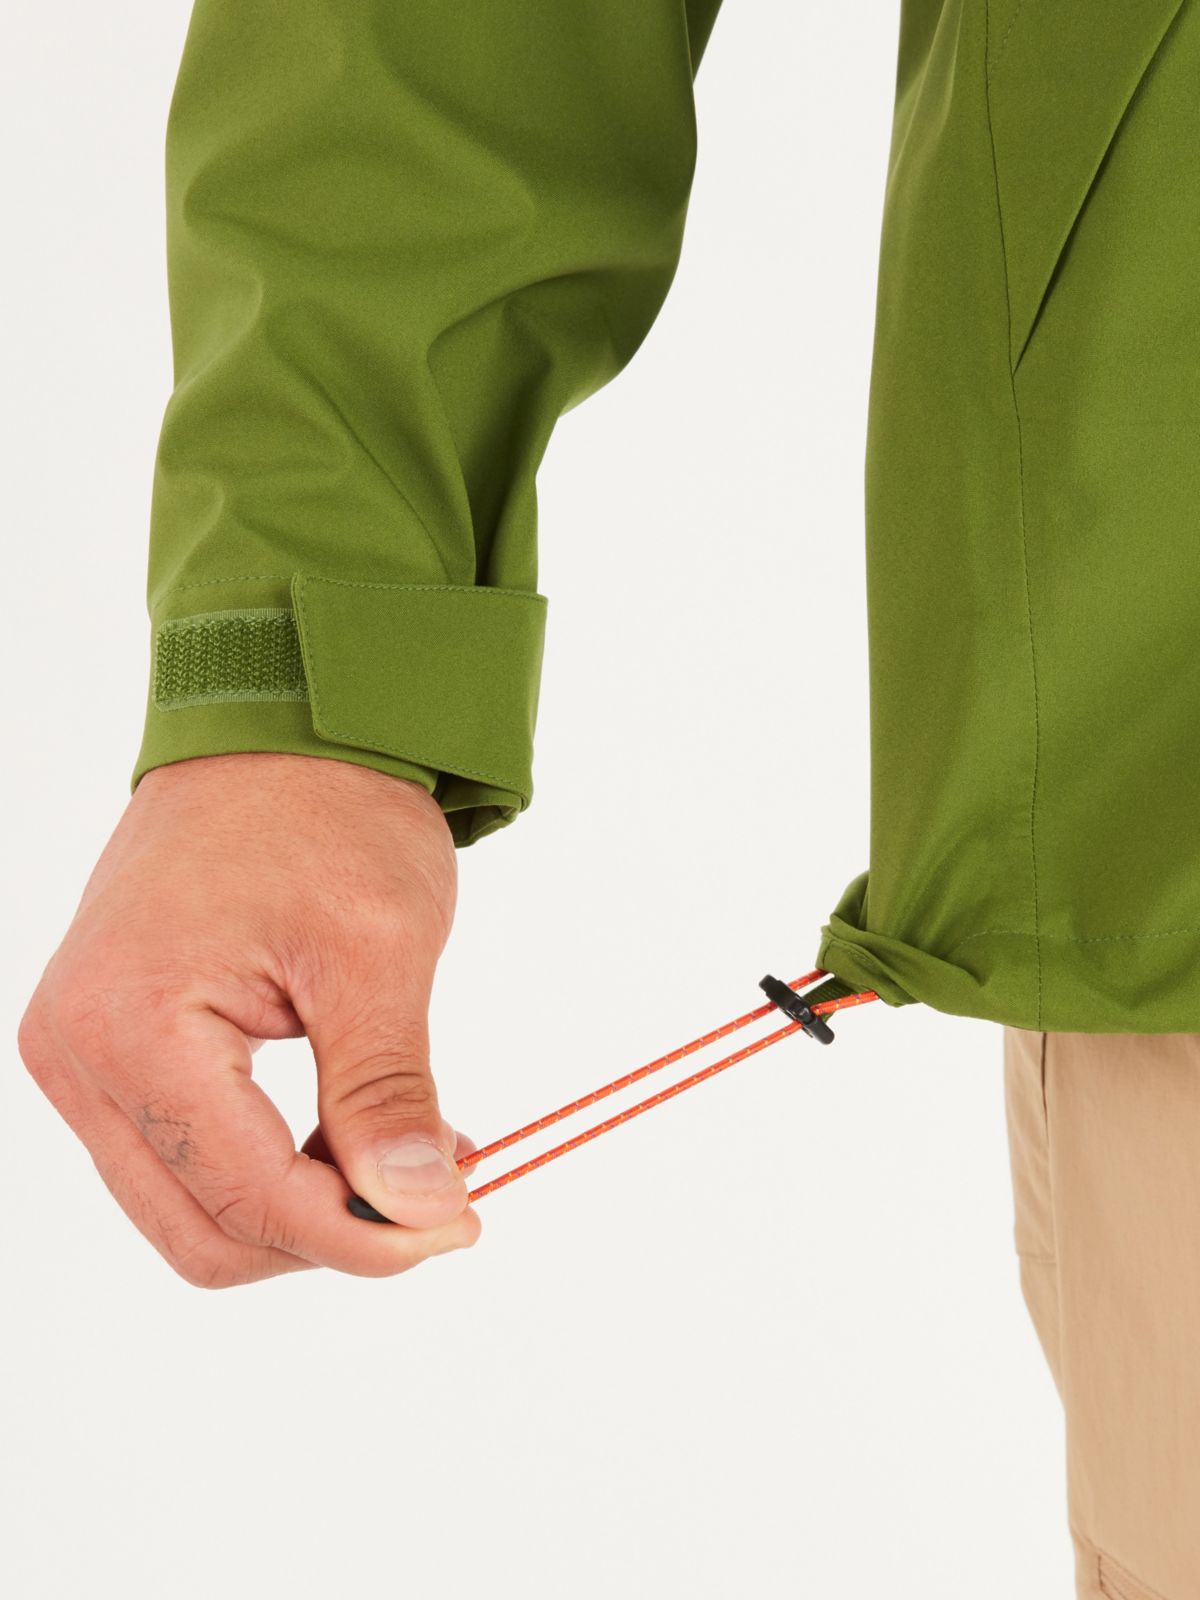 fastening windbreaker jacket to prevent wind